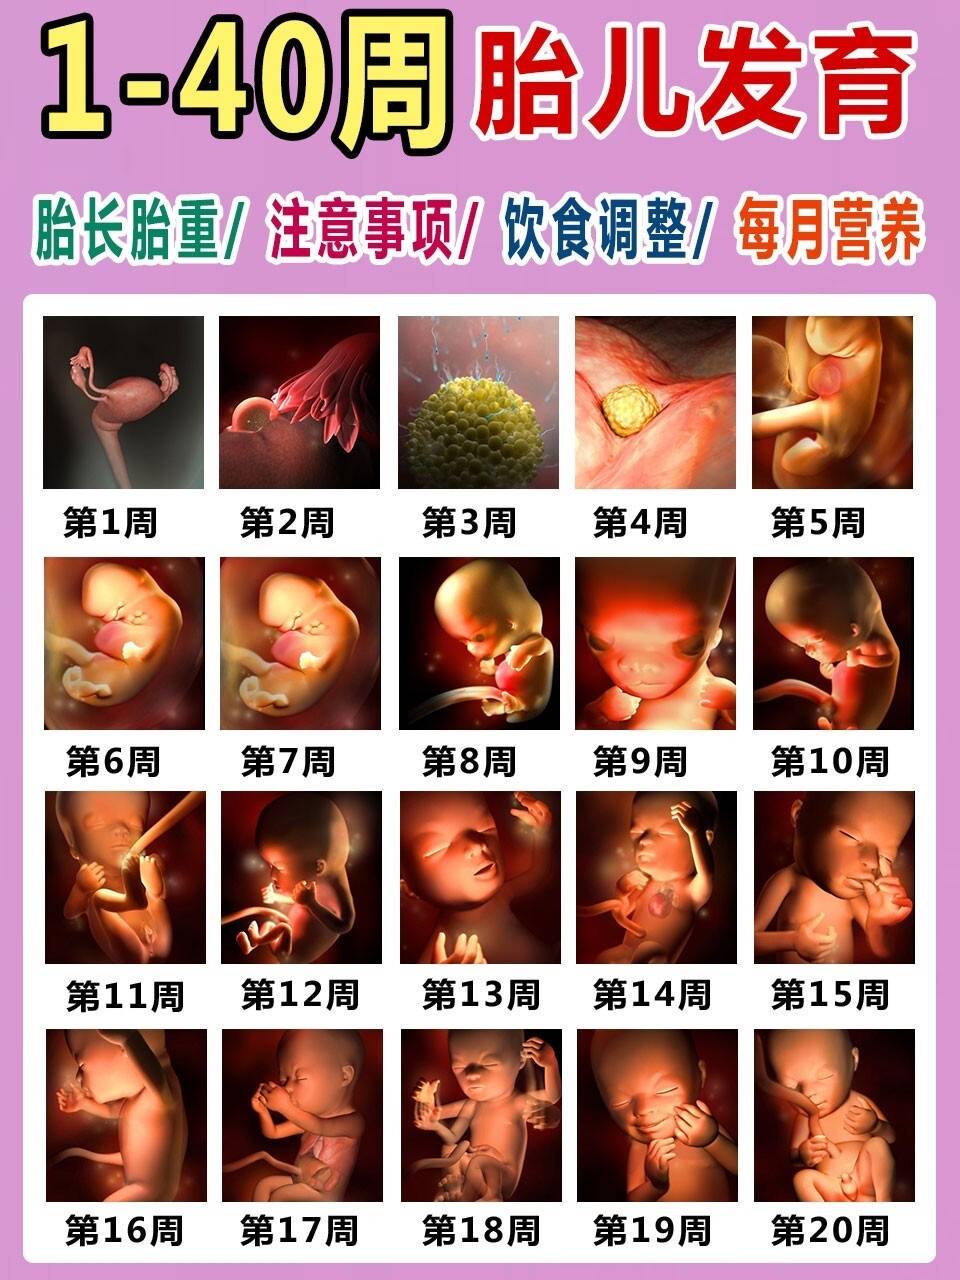 【1-40周】 胎儿发育的全过程,3d彩印超清晰